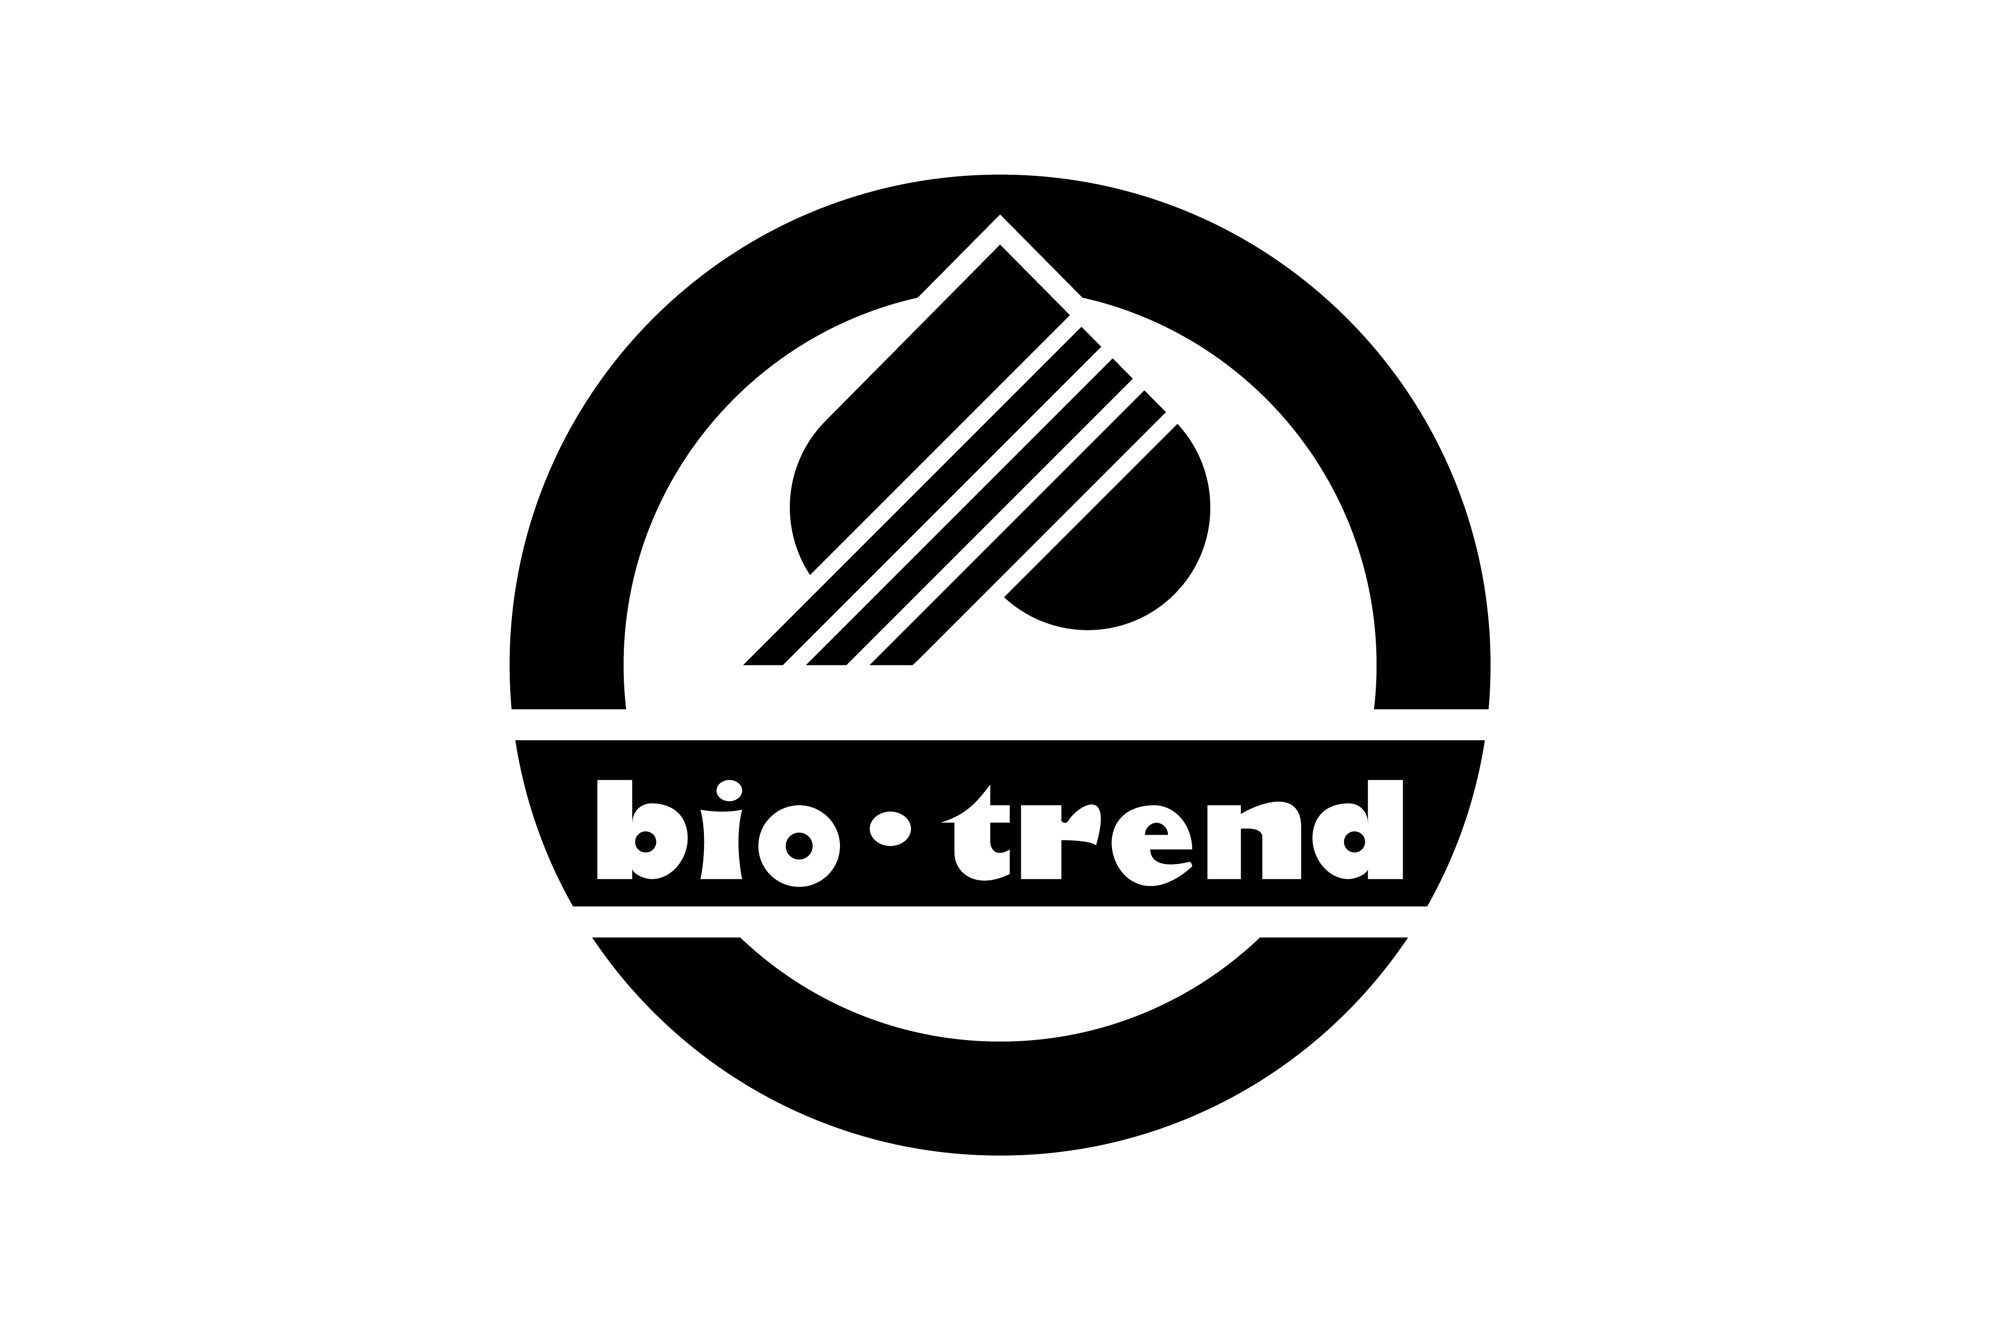 Bio-trend - logo PLANSZA 30x30cm EDYCJA